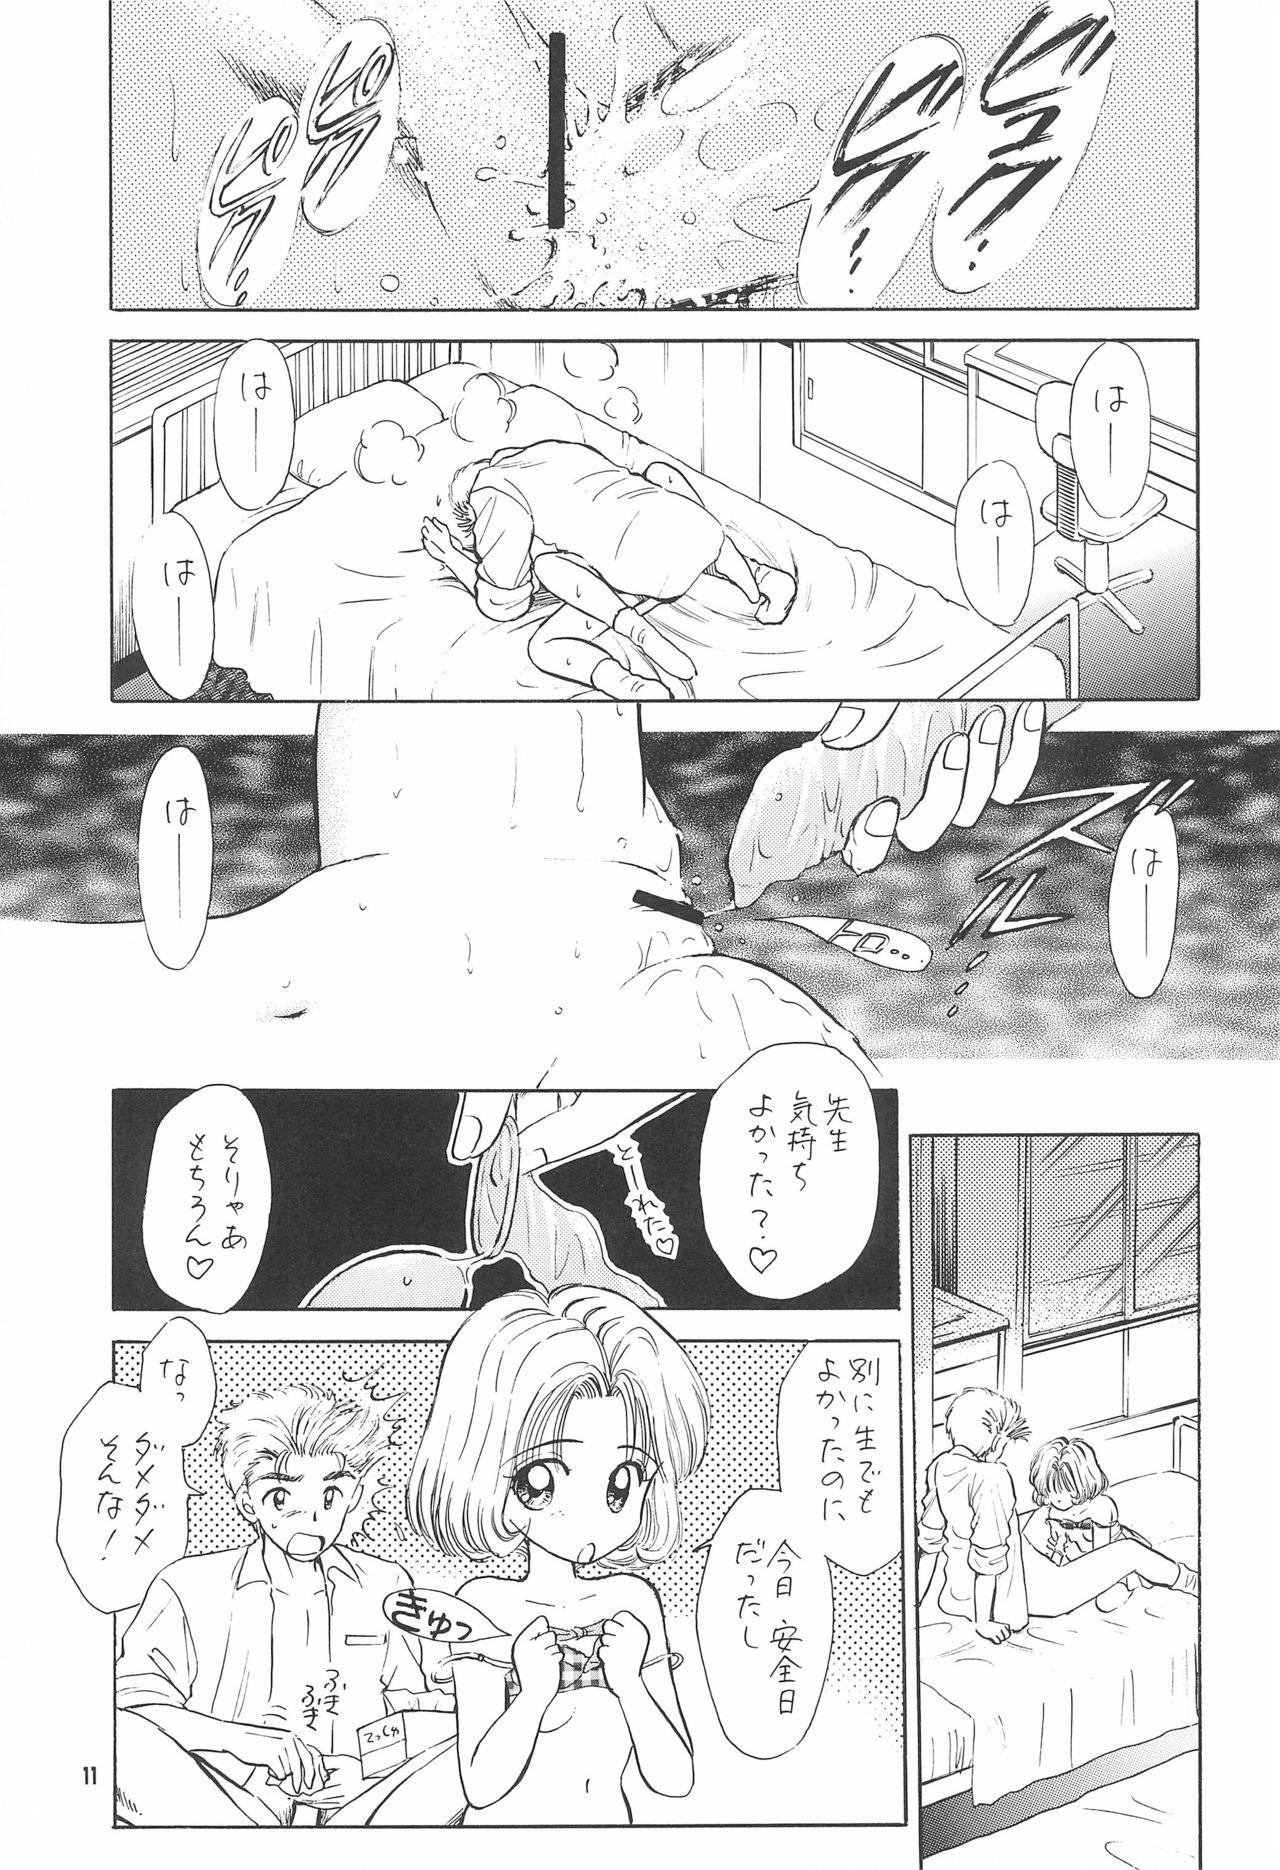 Liveshow Kyouiku no Genba kara - Cardcaptor sakura Stream - Page 13